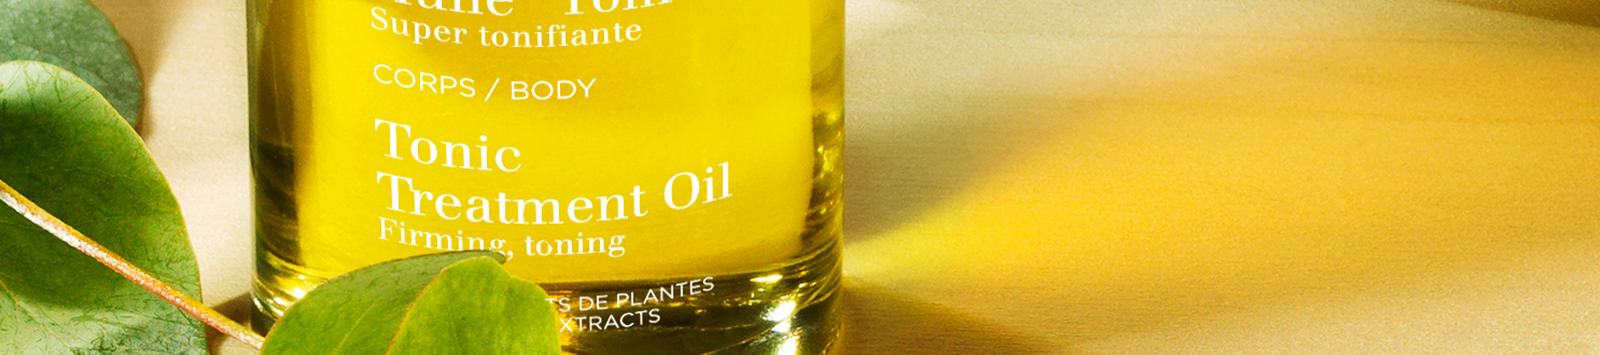 foto del producto aceites